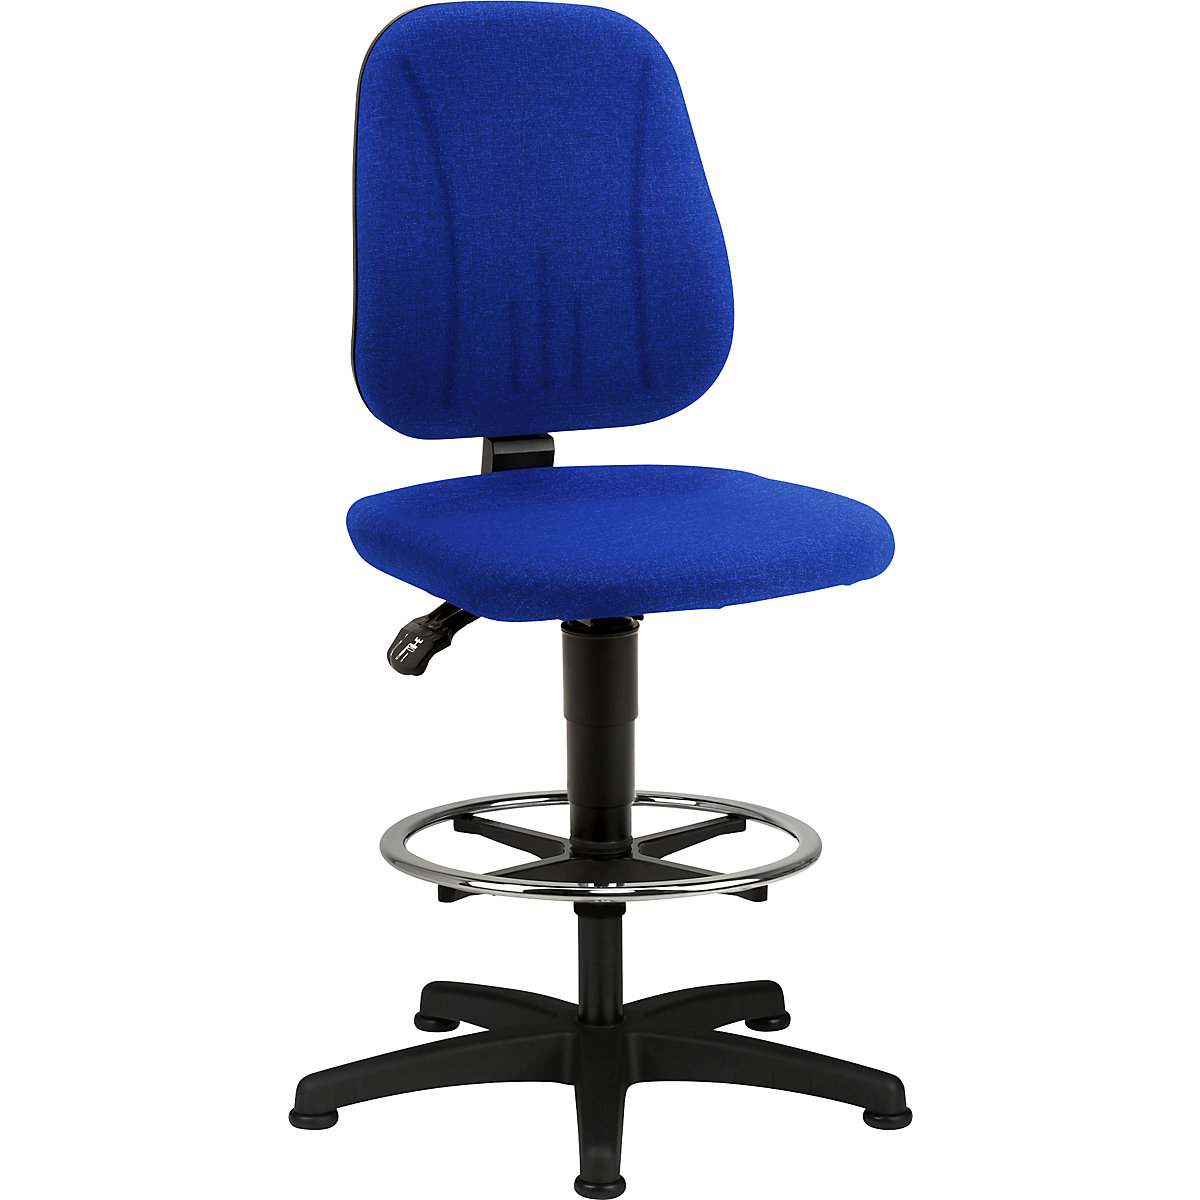 Pracovní otočná židle – bimos, s přestavováním výšky plynovým pístem, látkový potah, modrá, s podlahovými patkami a nožním kruhem-1